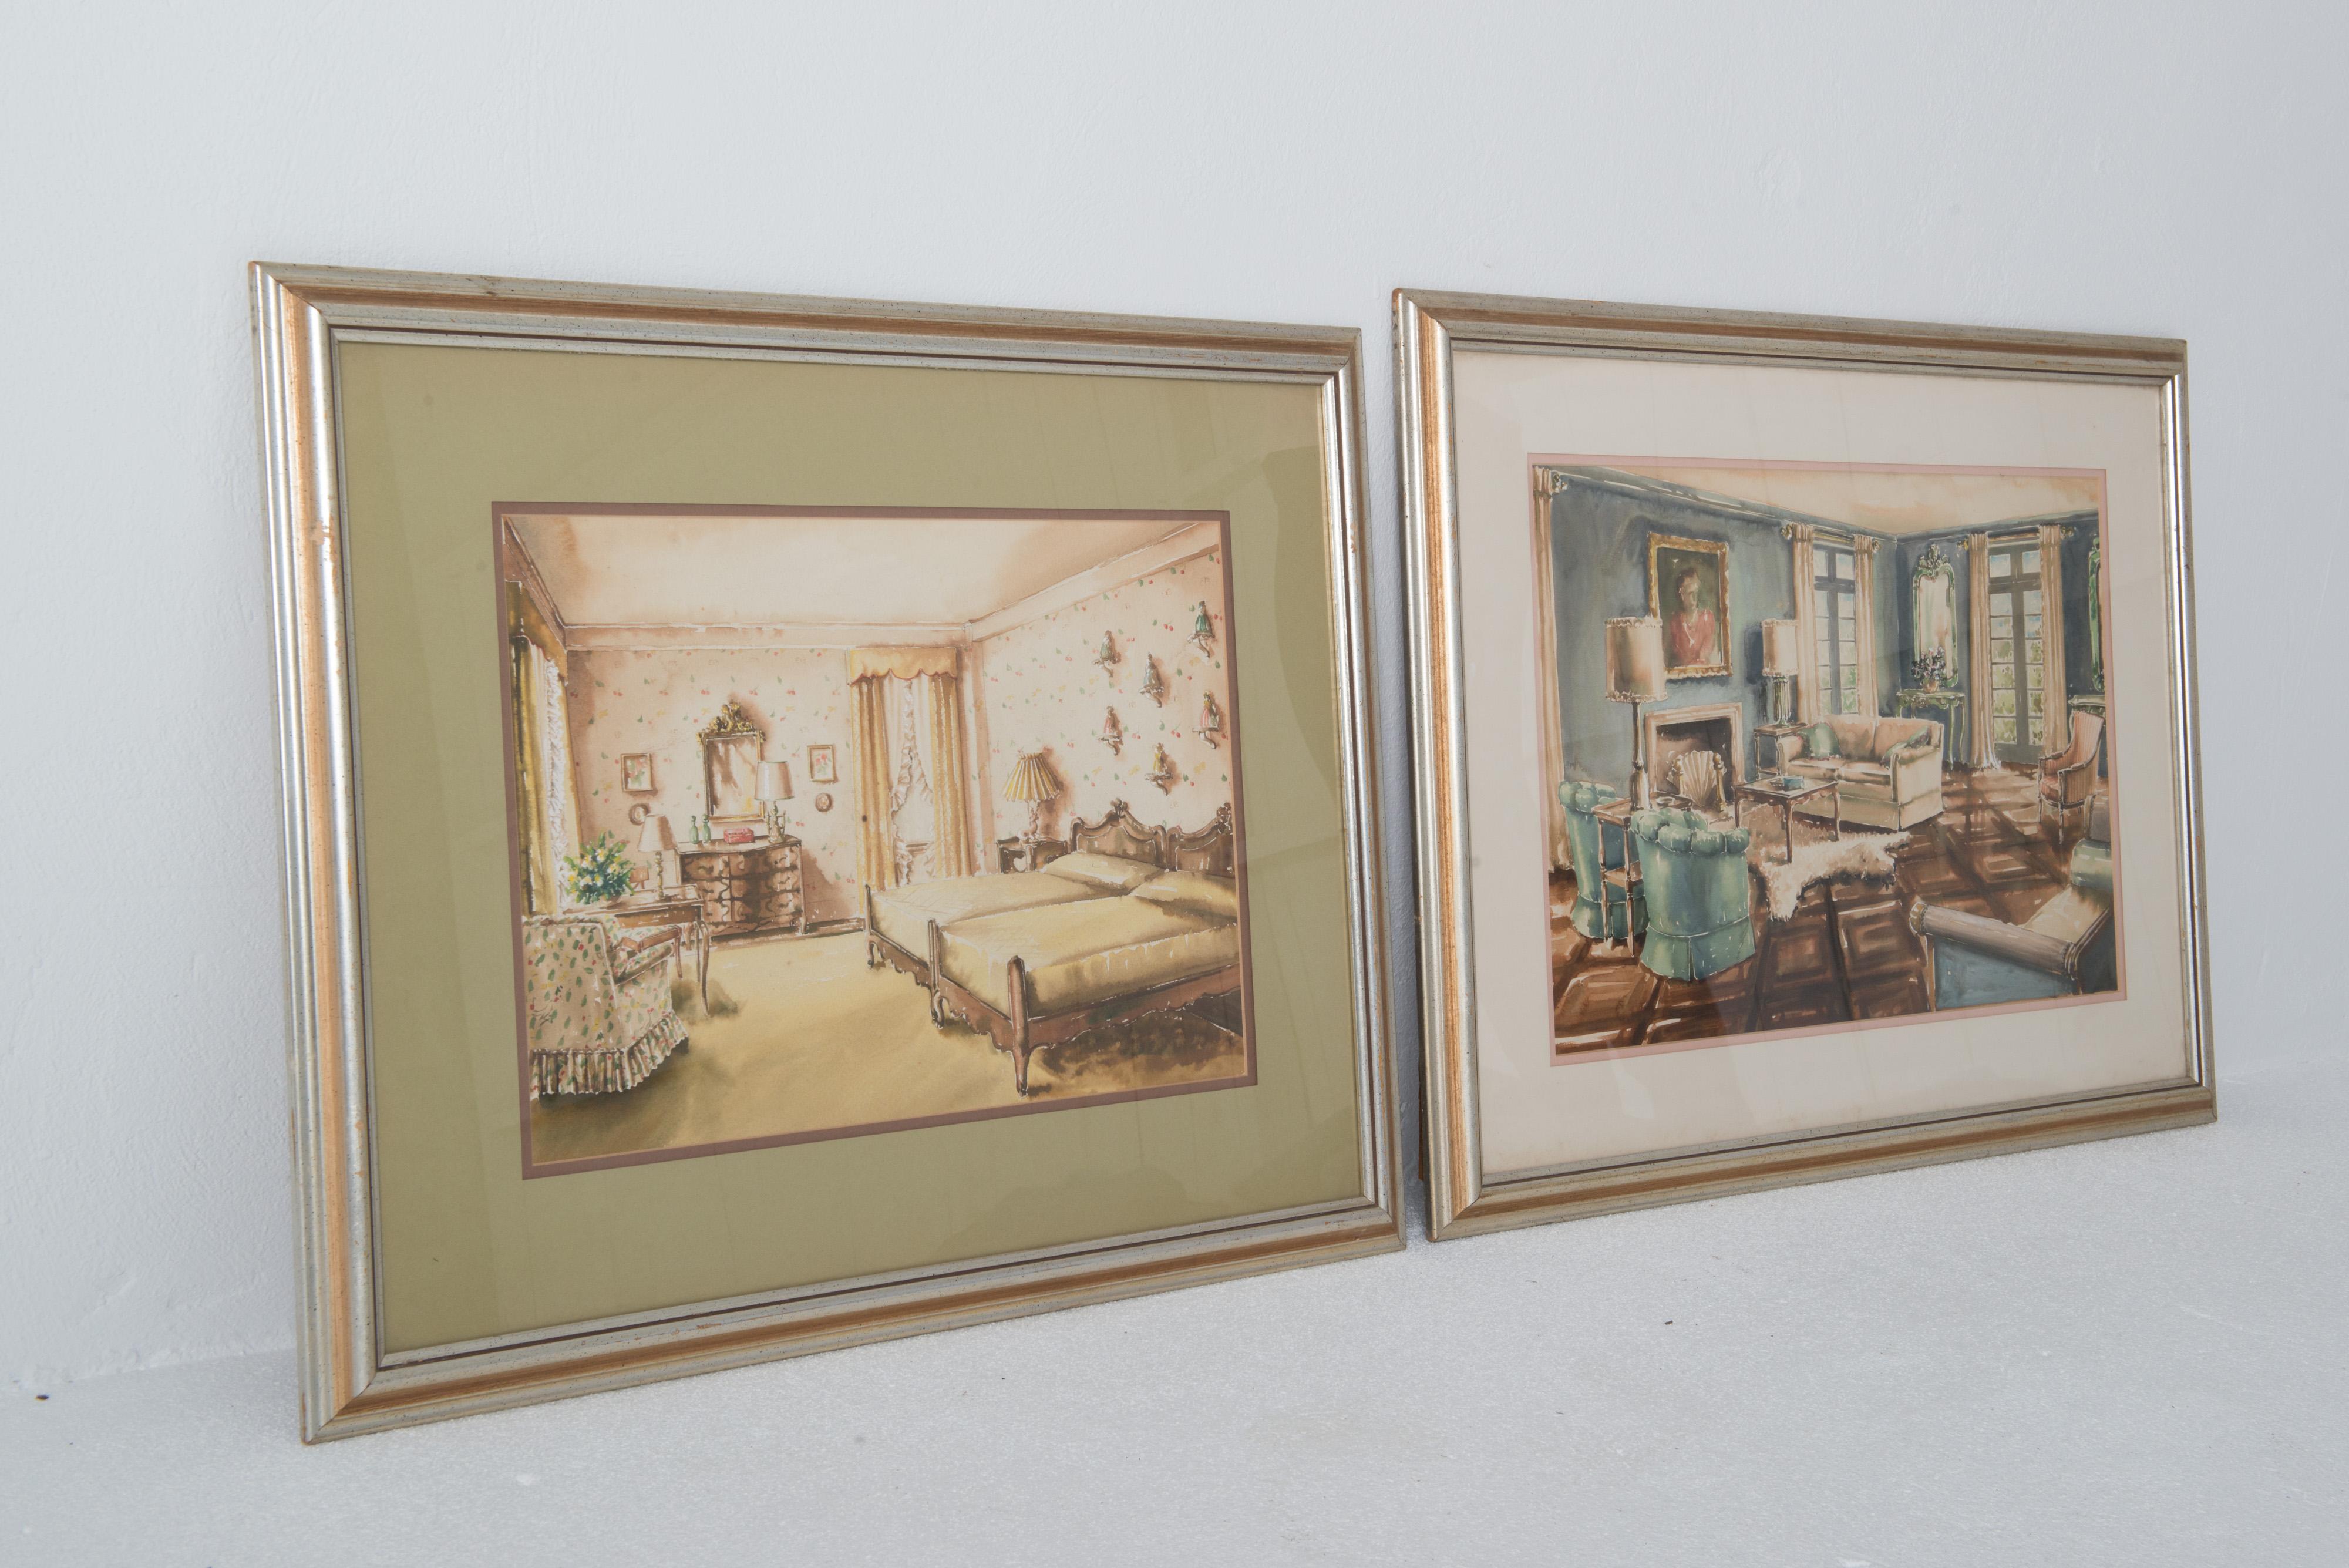 Il s'agit de deux superbes aquarelles représentant des intérieurs typiques des années 1940.
La première est un magnifique salon sarcelle et crème. L'autre est une charmante chambre à coucher beige à motifs. Les deux peintures sont encadrées dans des